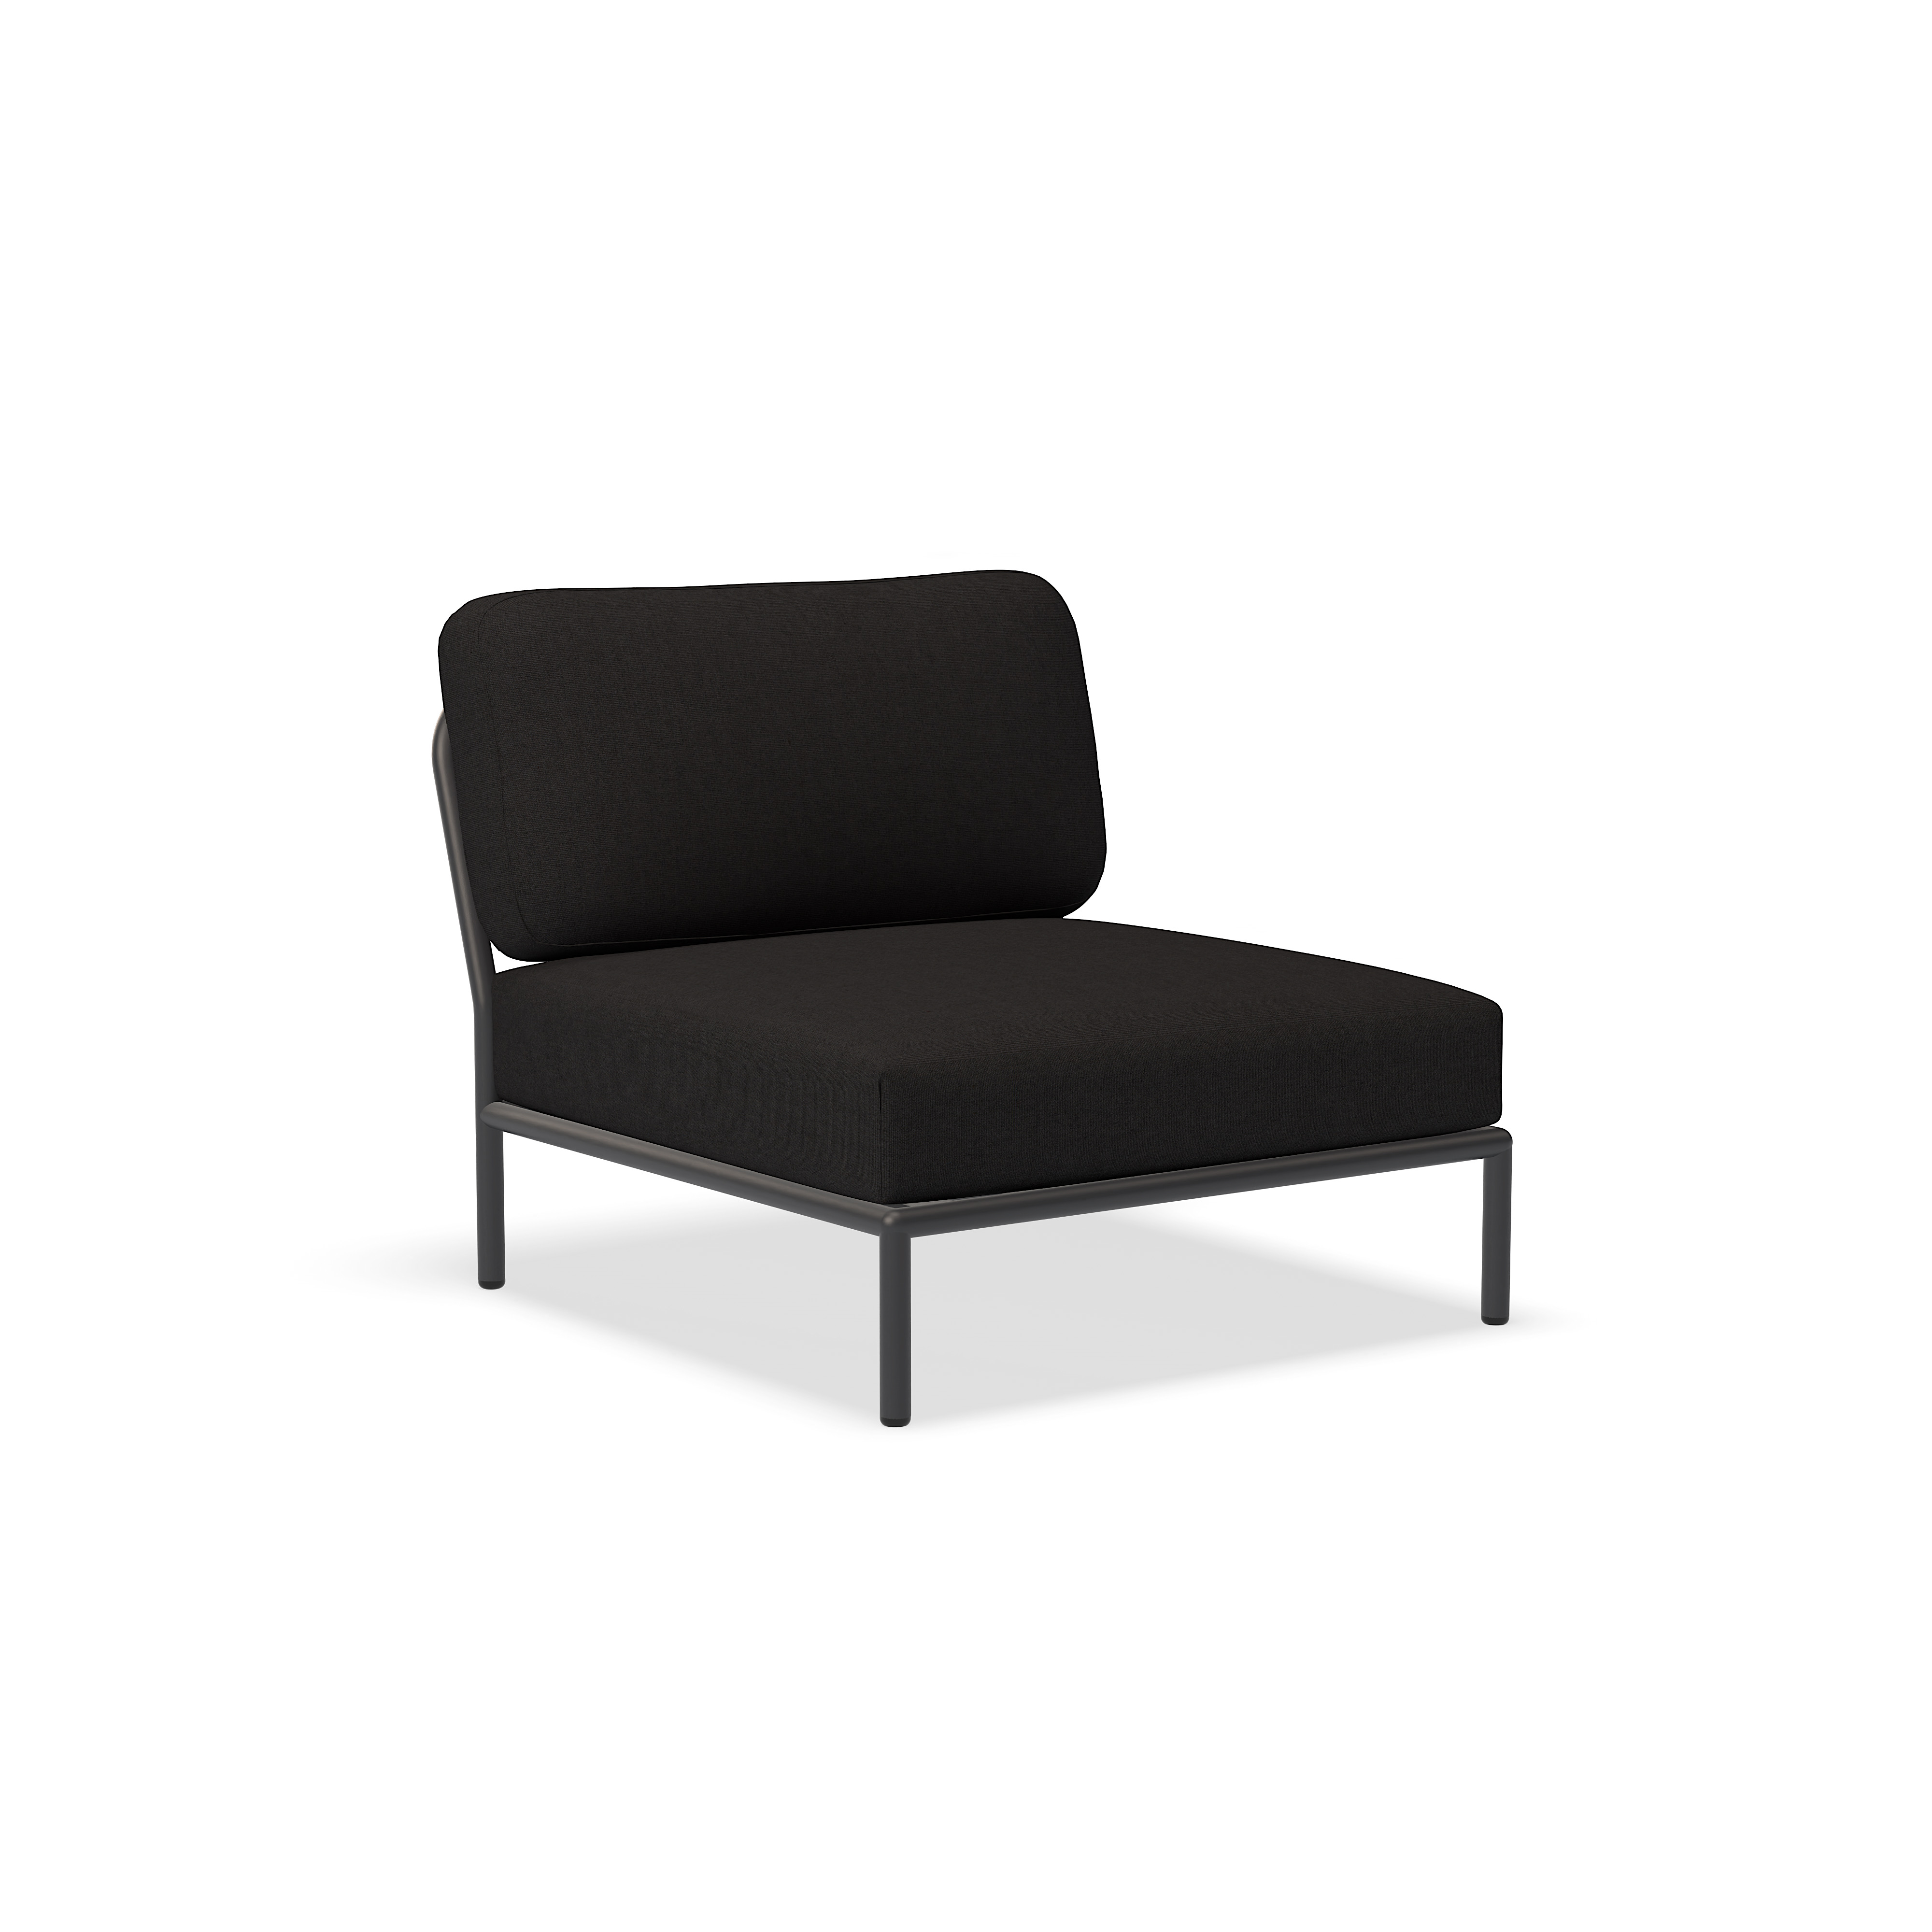 الكرسي - 12205-6851 - كرسي ، شار (HERITAGE) ، هيكل رمادي غامق